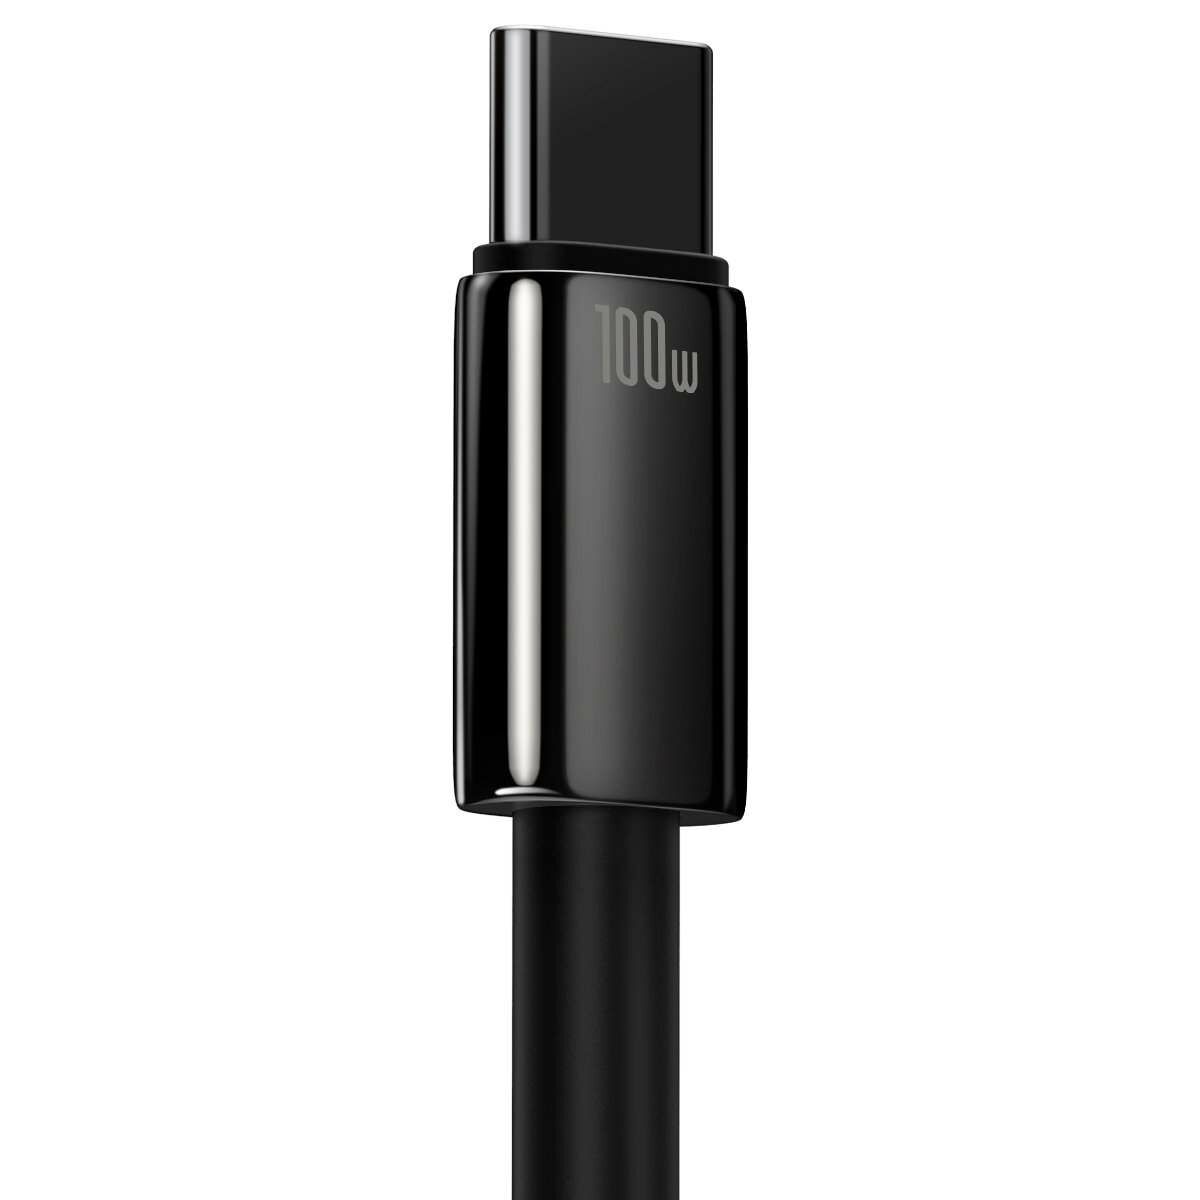 Kép 5/7 - Baseus Tungsten Gold Series USB - USB-C töltőkábel, 480Mb/s, 100W, 2m, fekete (CAWJ000101)